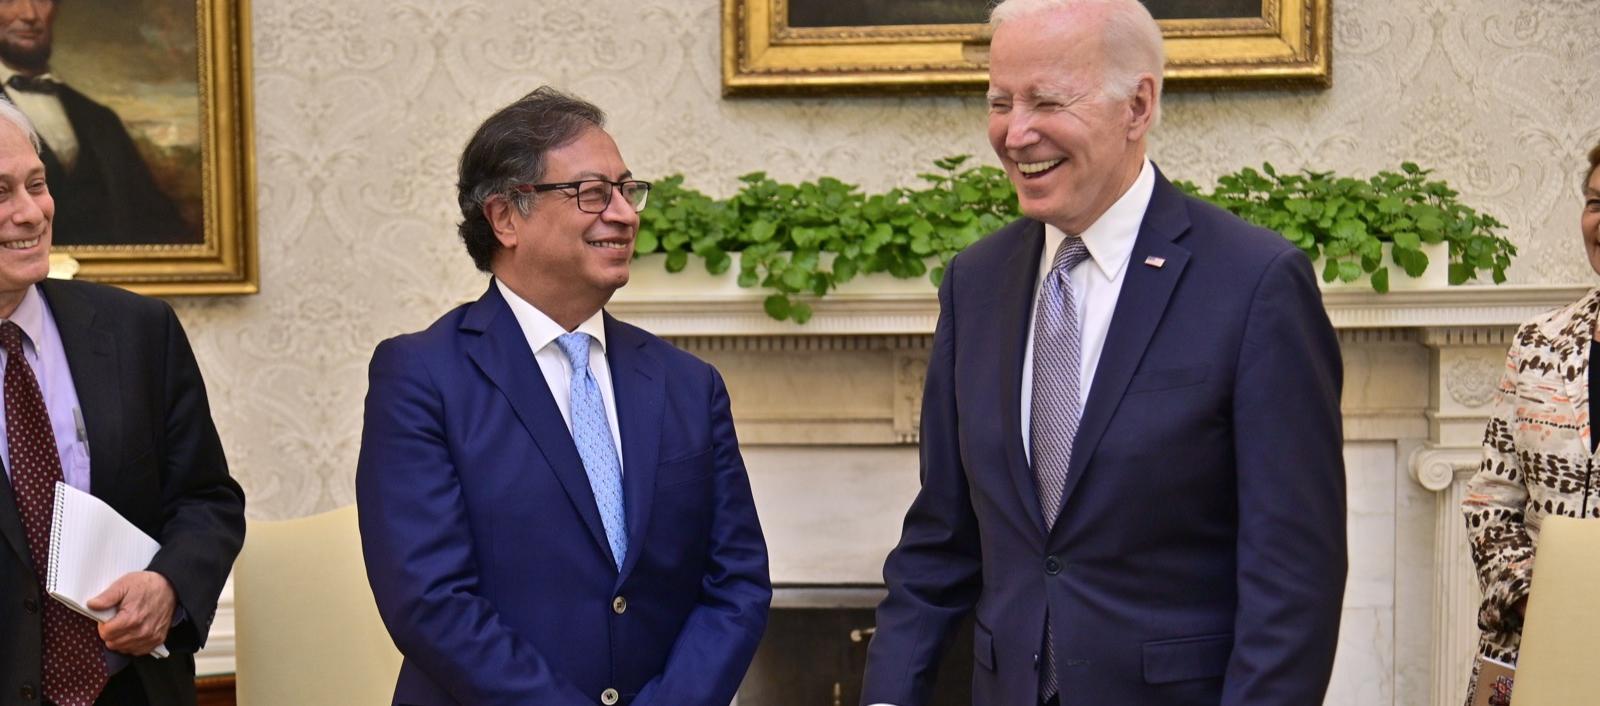 El Presidente Biden y su colega de Colombia, Gustavo Petro, sonríen en el Salón Oval de la Casa Blanca en donde se reúnen